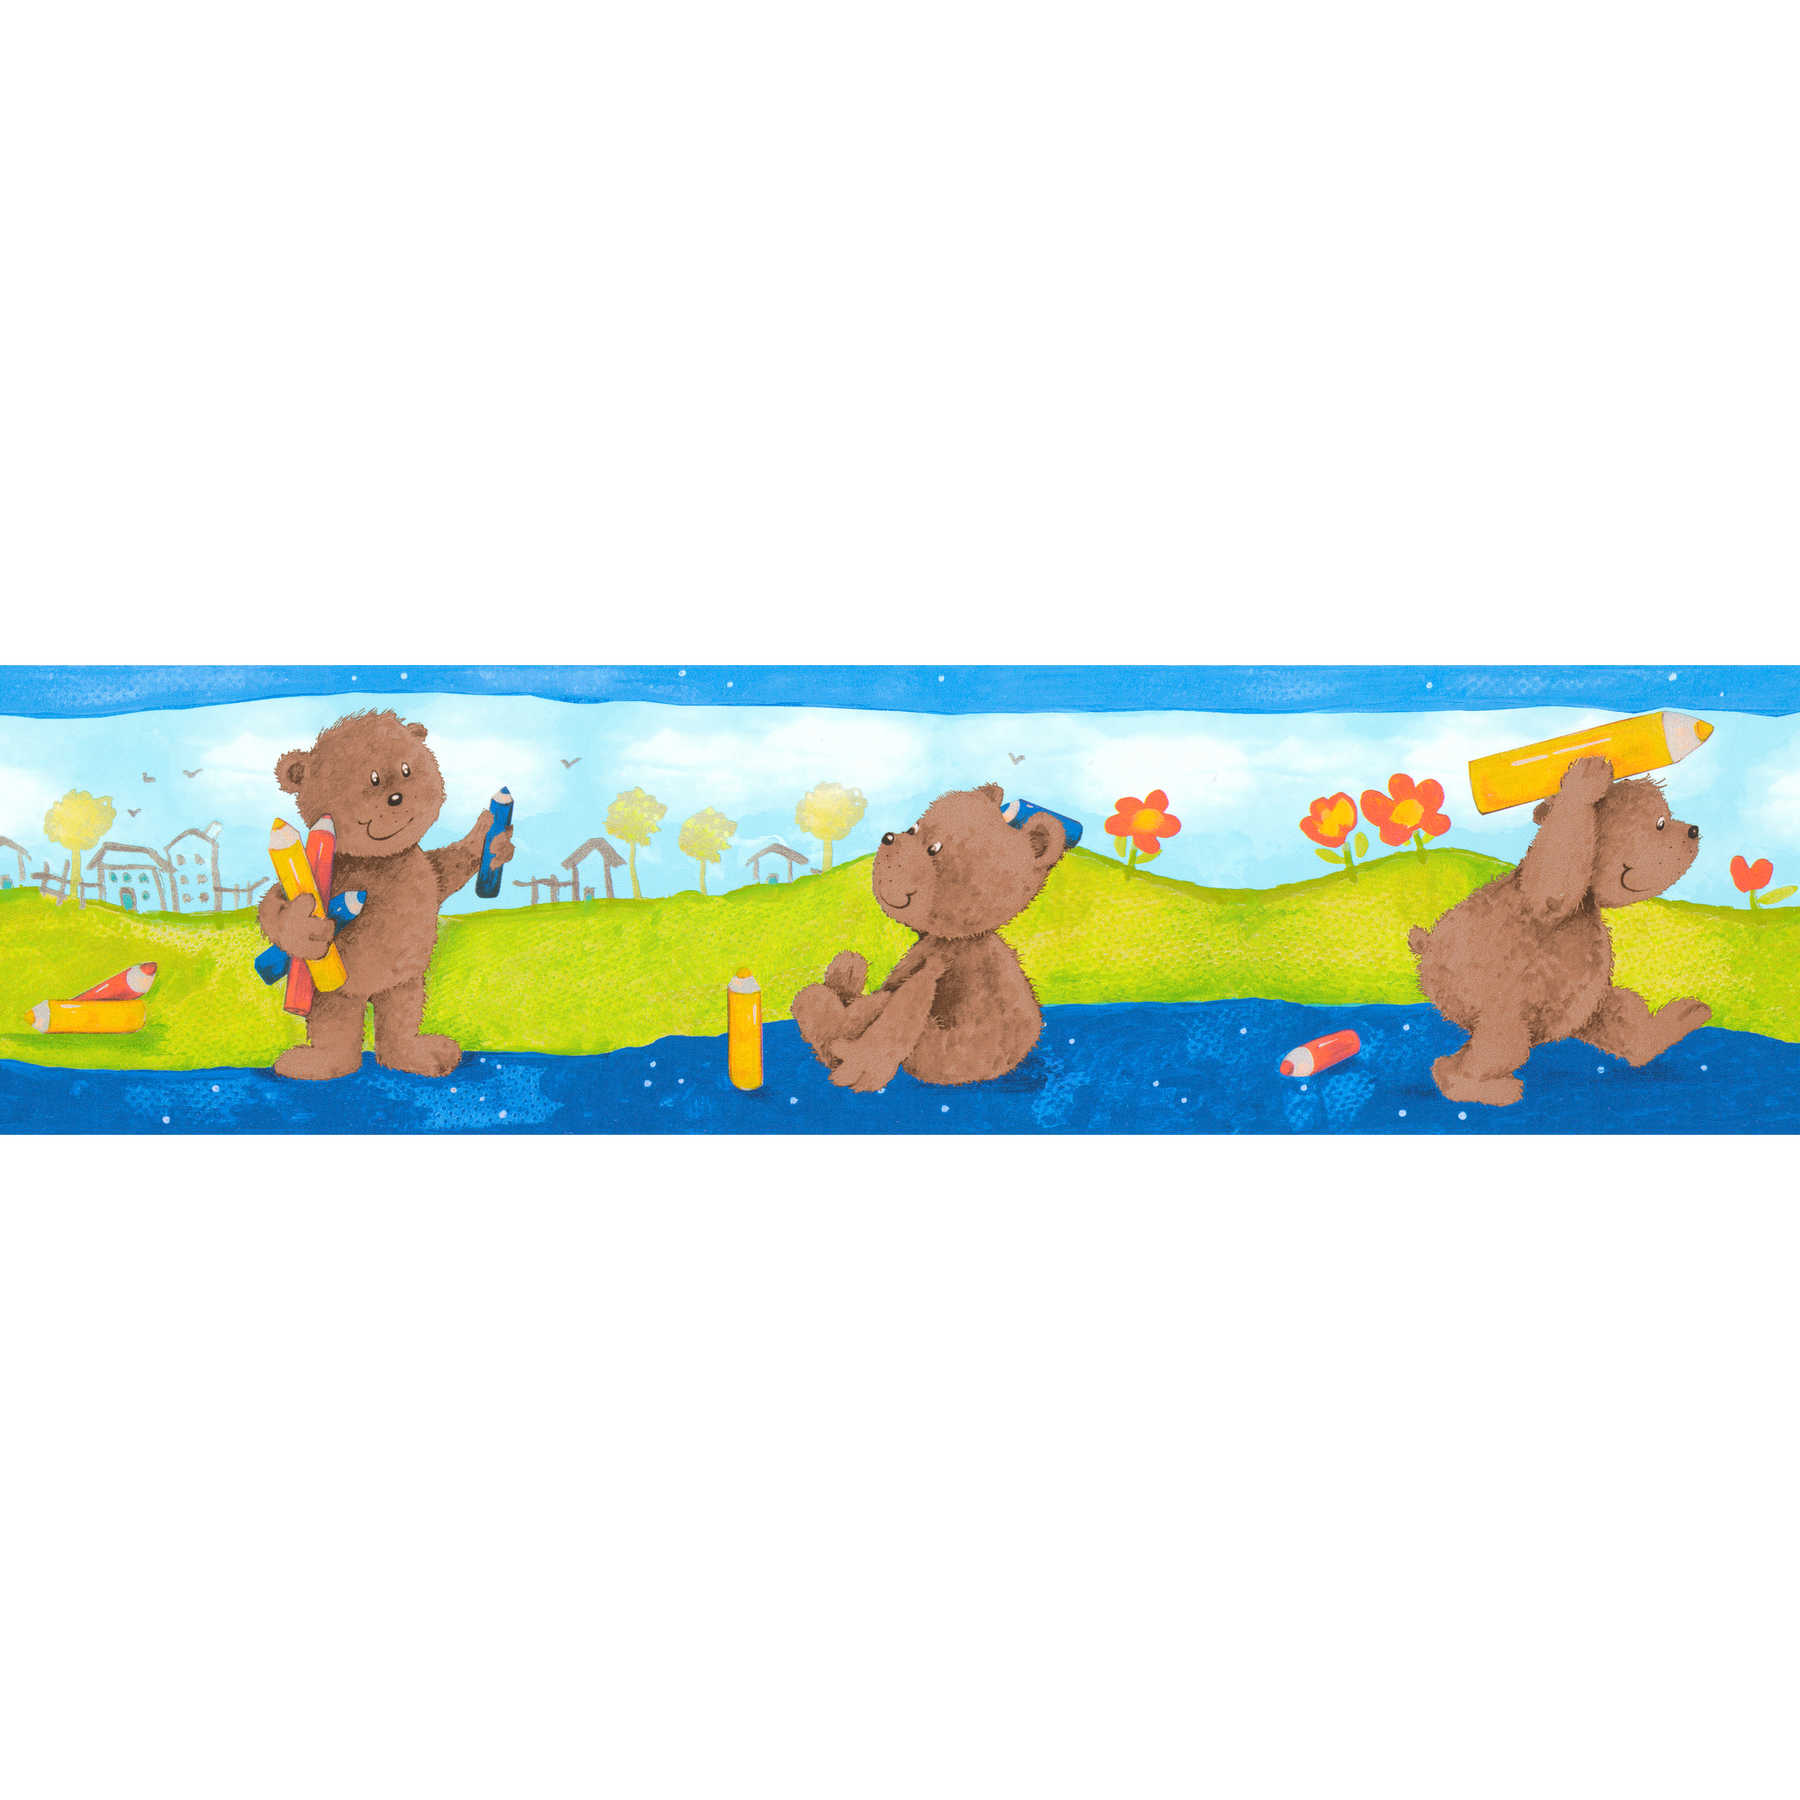 Bordure de chambre d'enfant avec motif ourson - multicolore
